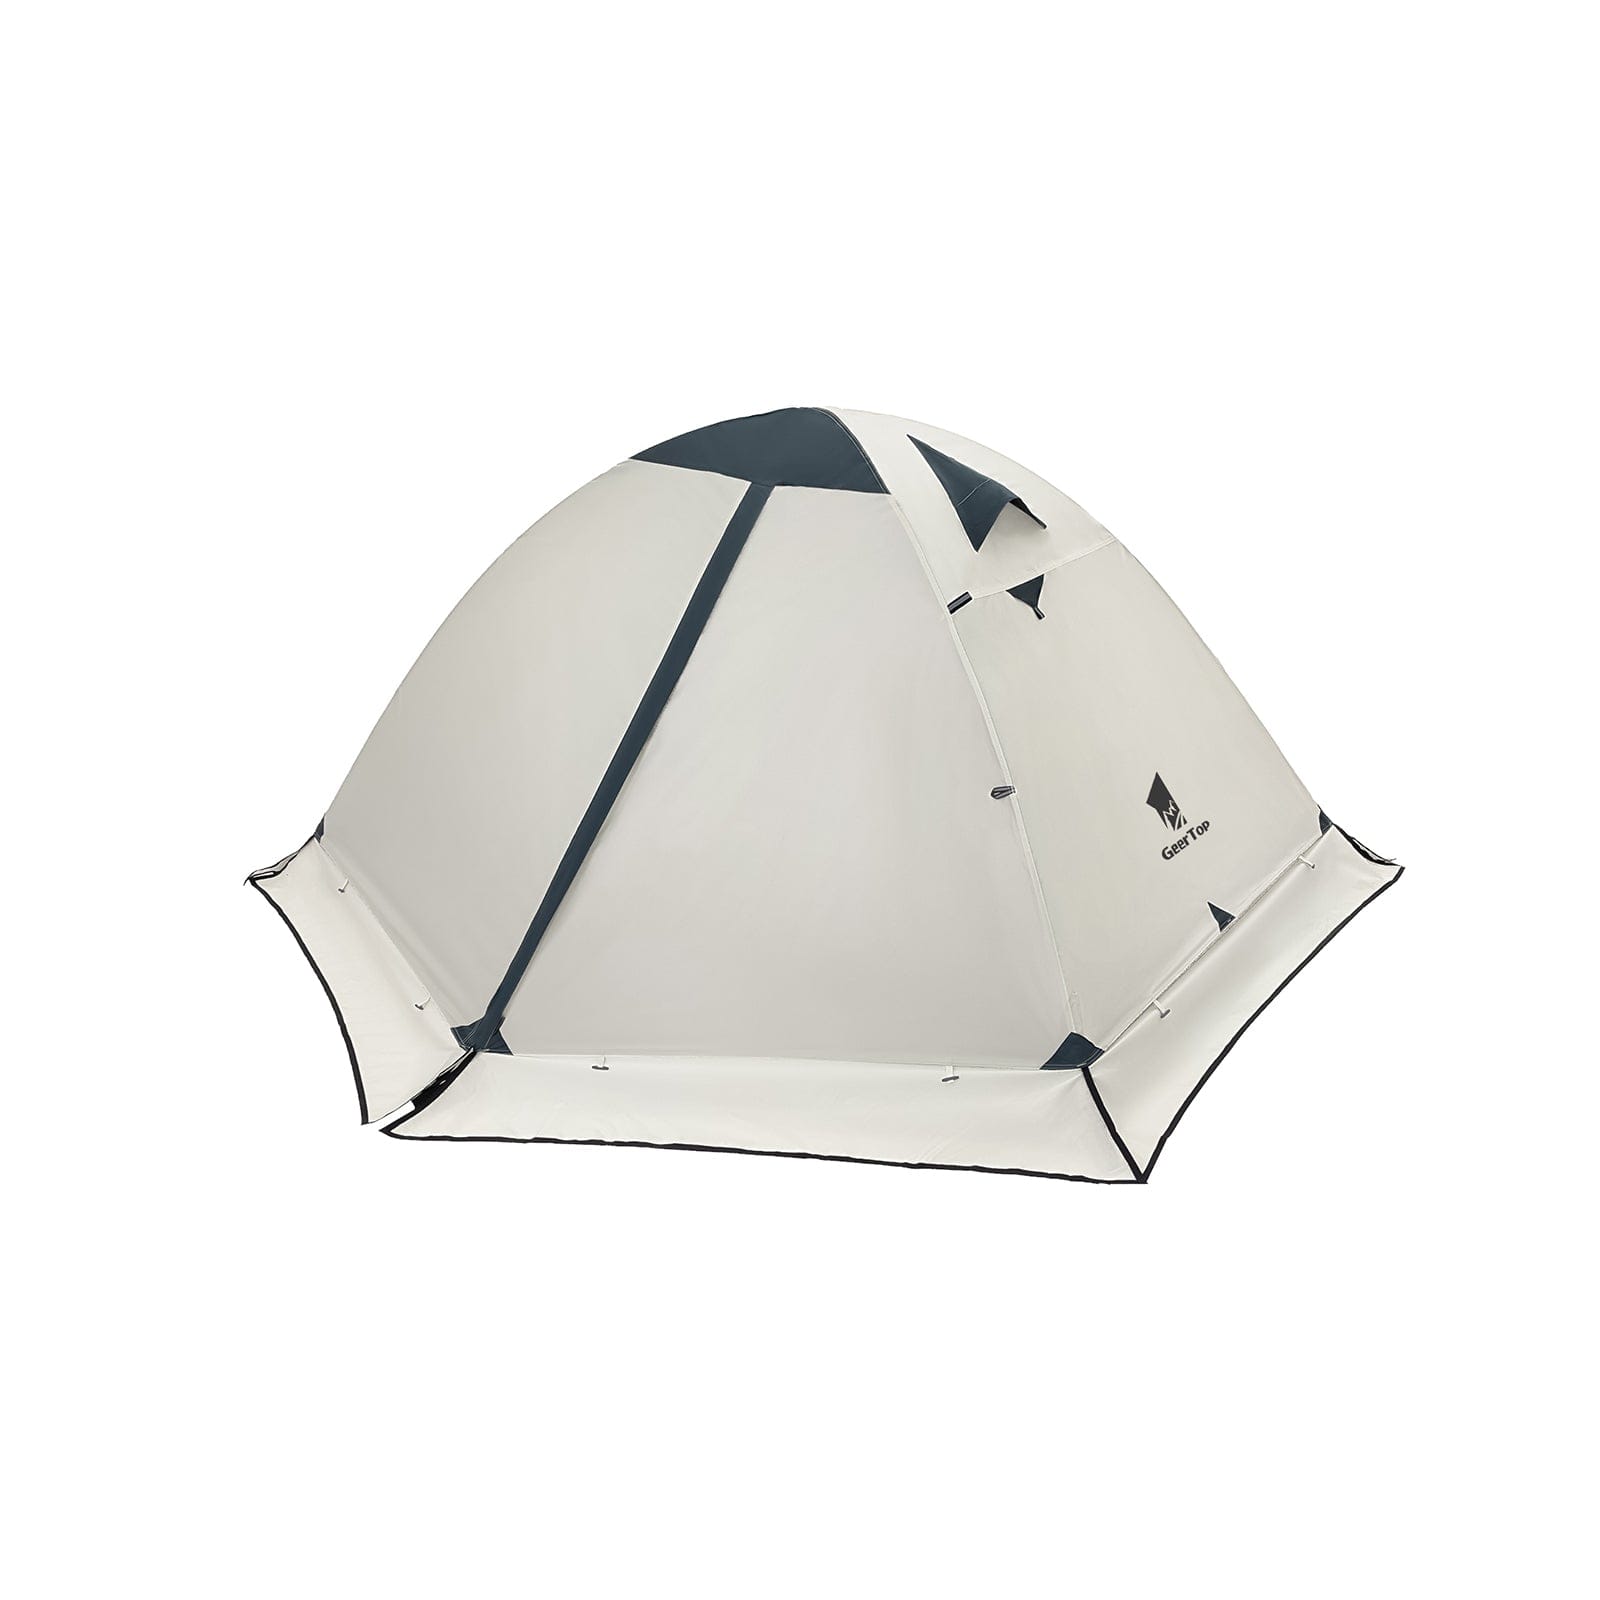 GeerTop 2 Person 4 Season Backpacking Camping Tent Waterproof 